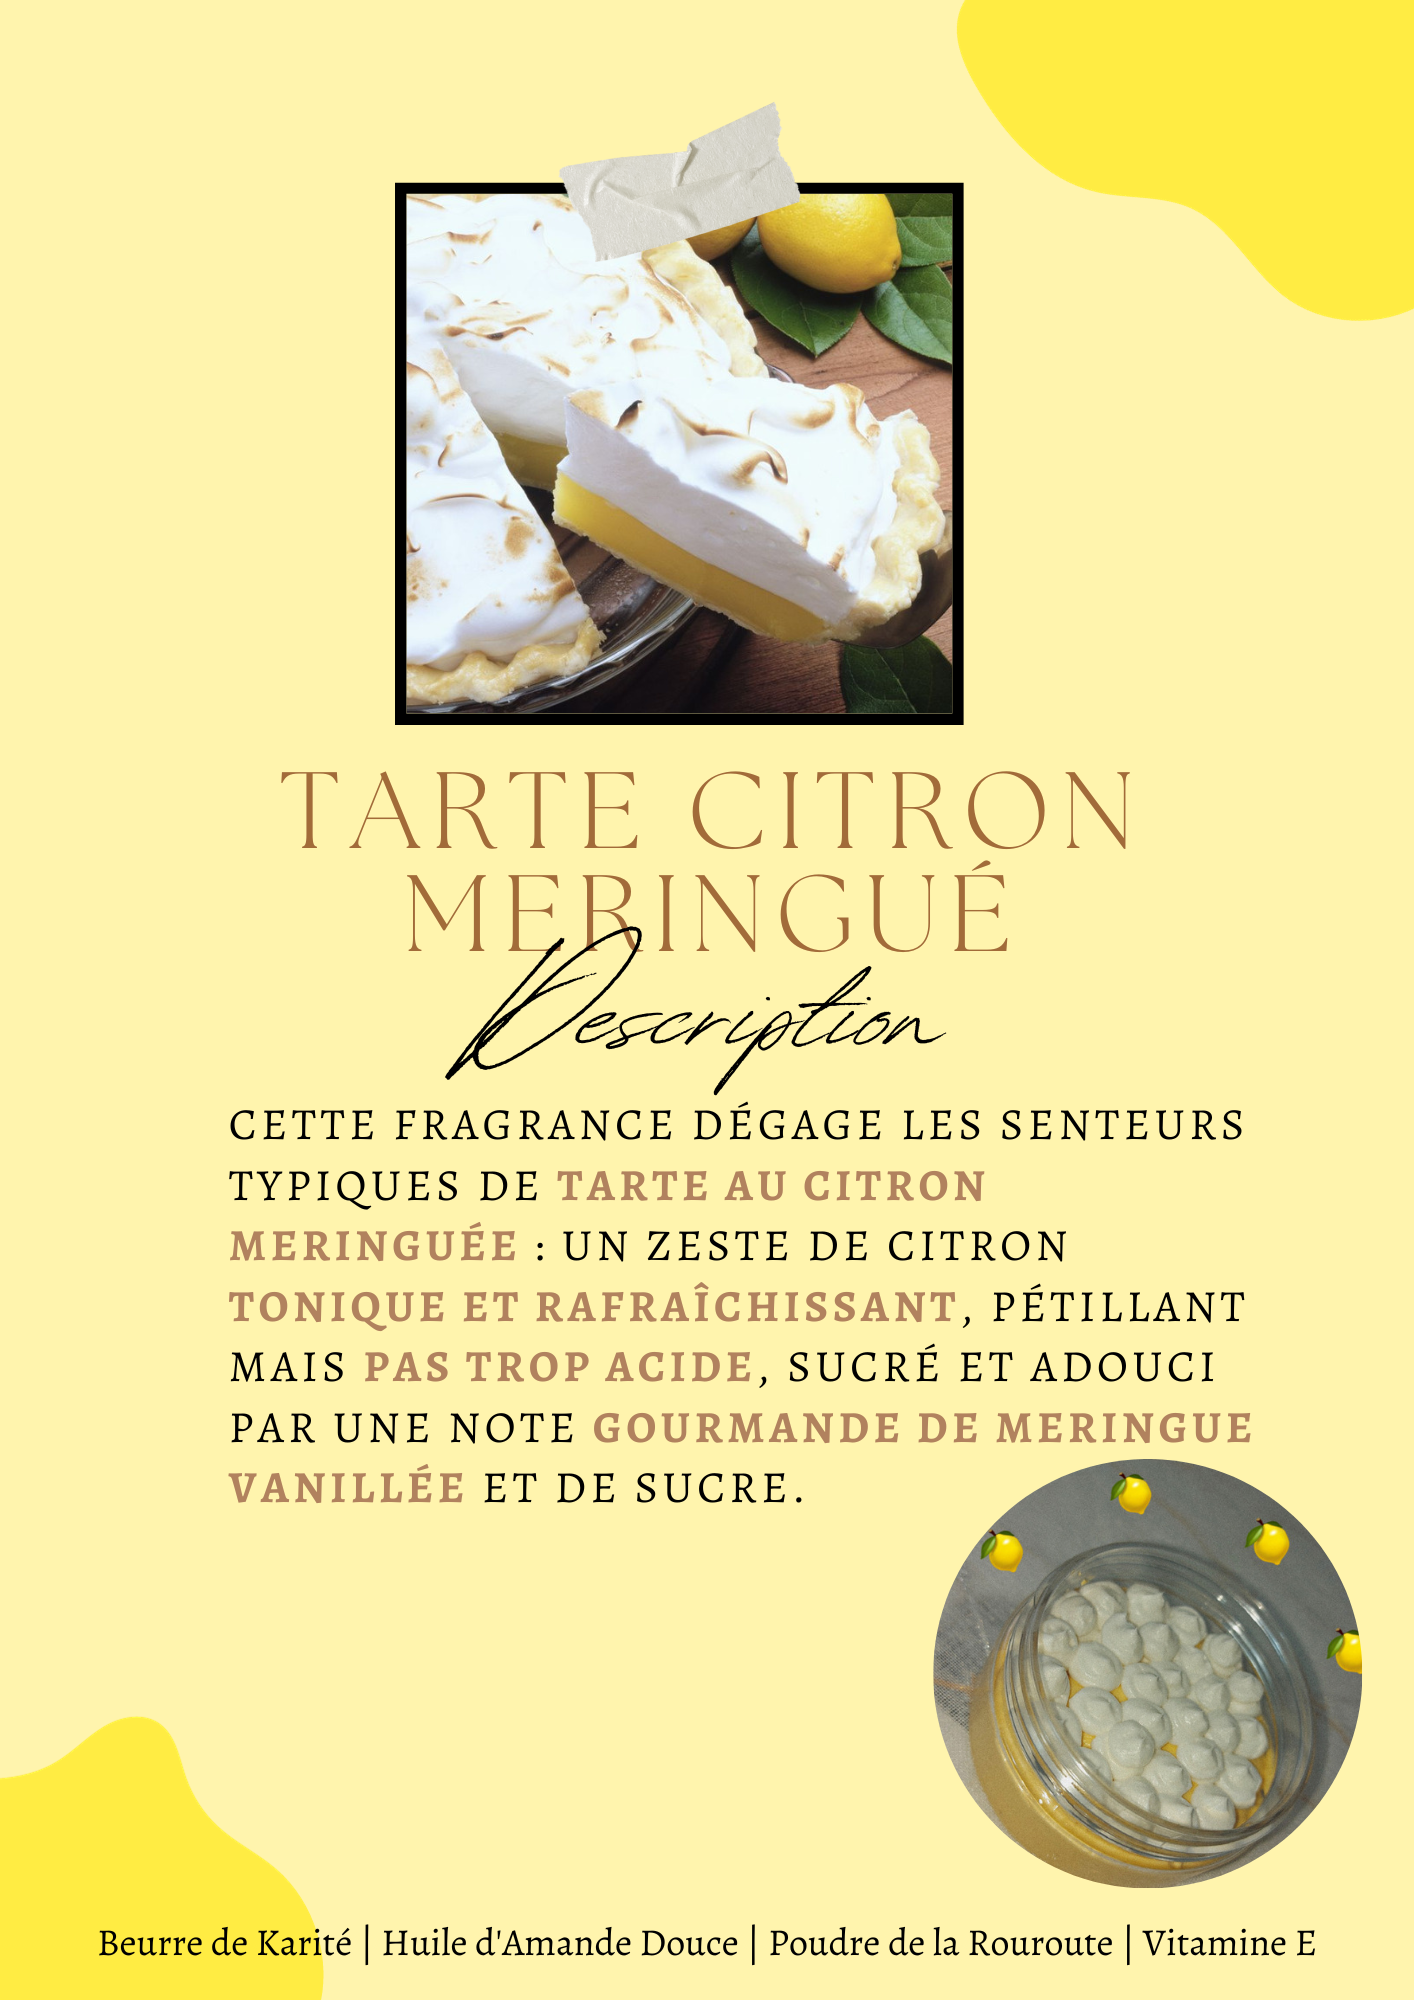 Tarte Citron Meringuée